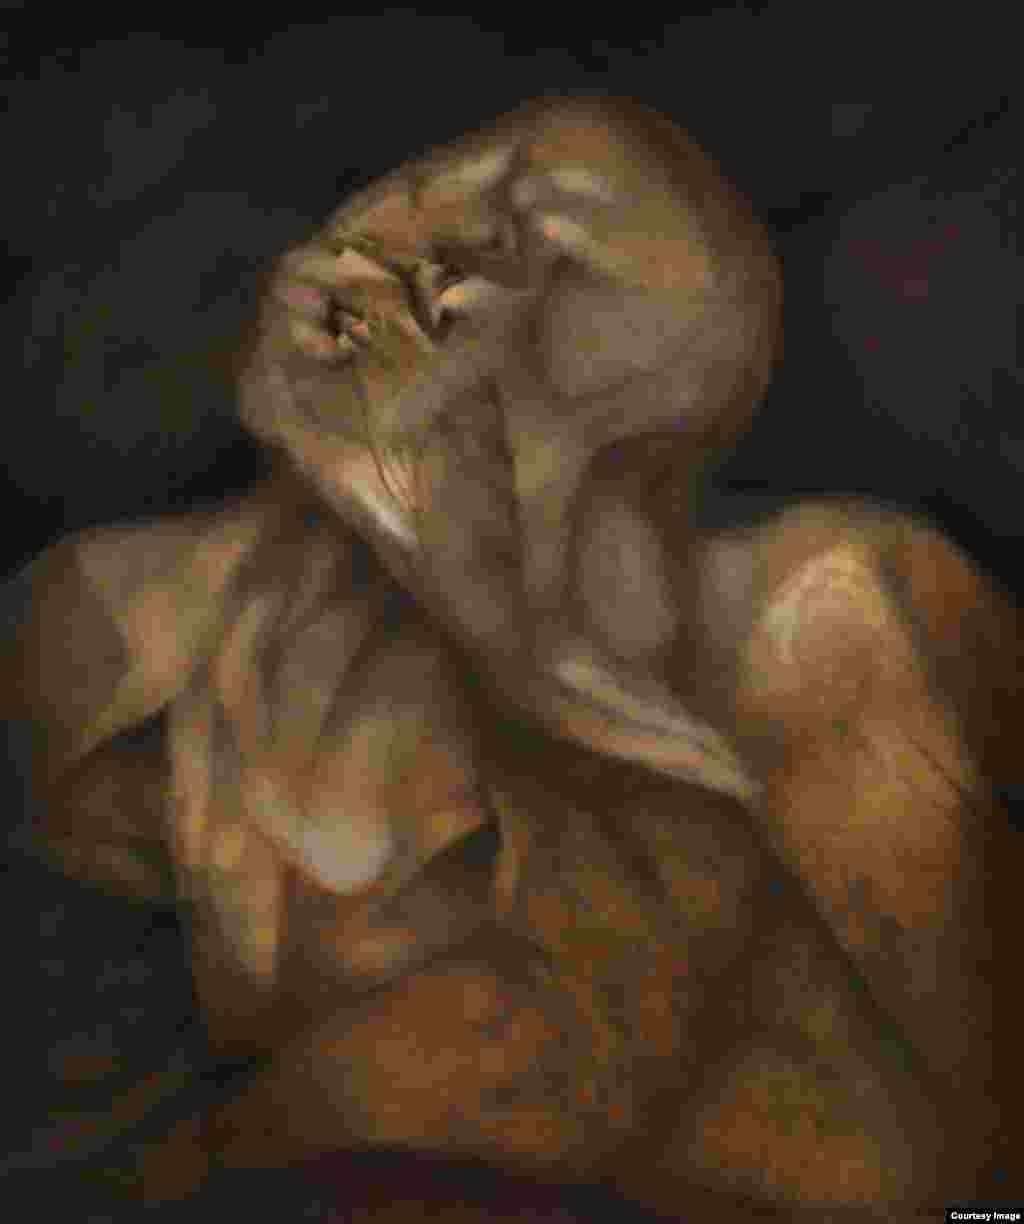 Rafael Soriano. "Angustia del olvido (The Anguish of Oblivion)", 1996. Oil on canvas/óleo sobre lienzo 36 x 30 inches (91.4 x 76.2 centímetros). Rafael Soriano Family Collection/Colección de la Familia Rafael Soriano.